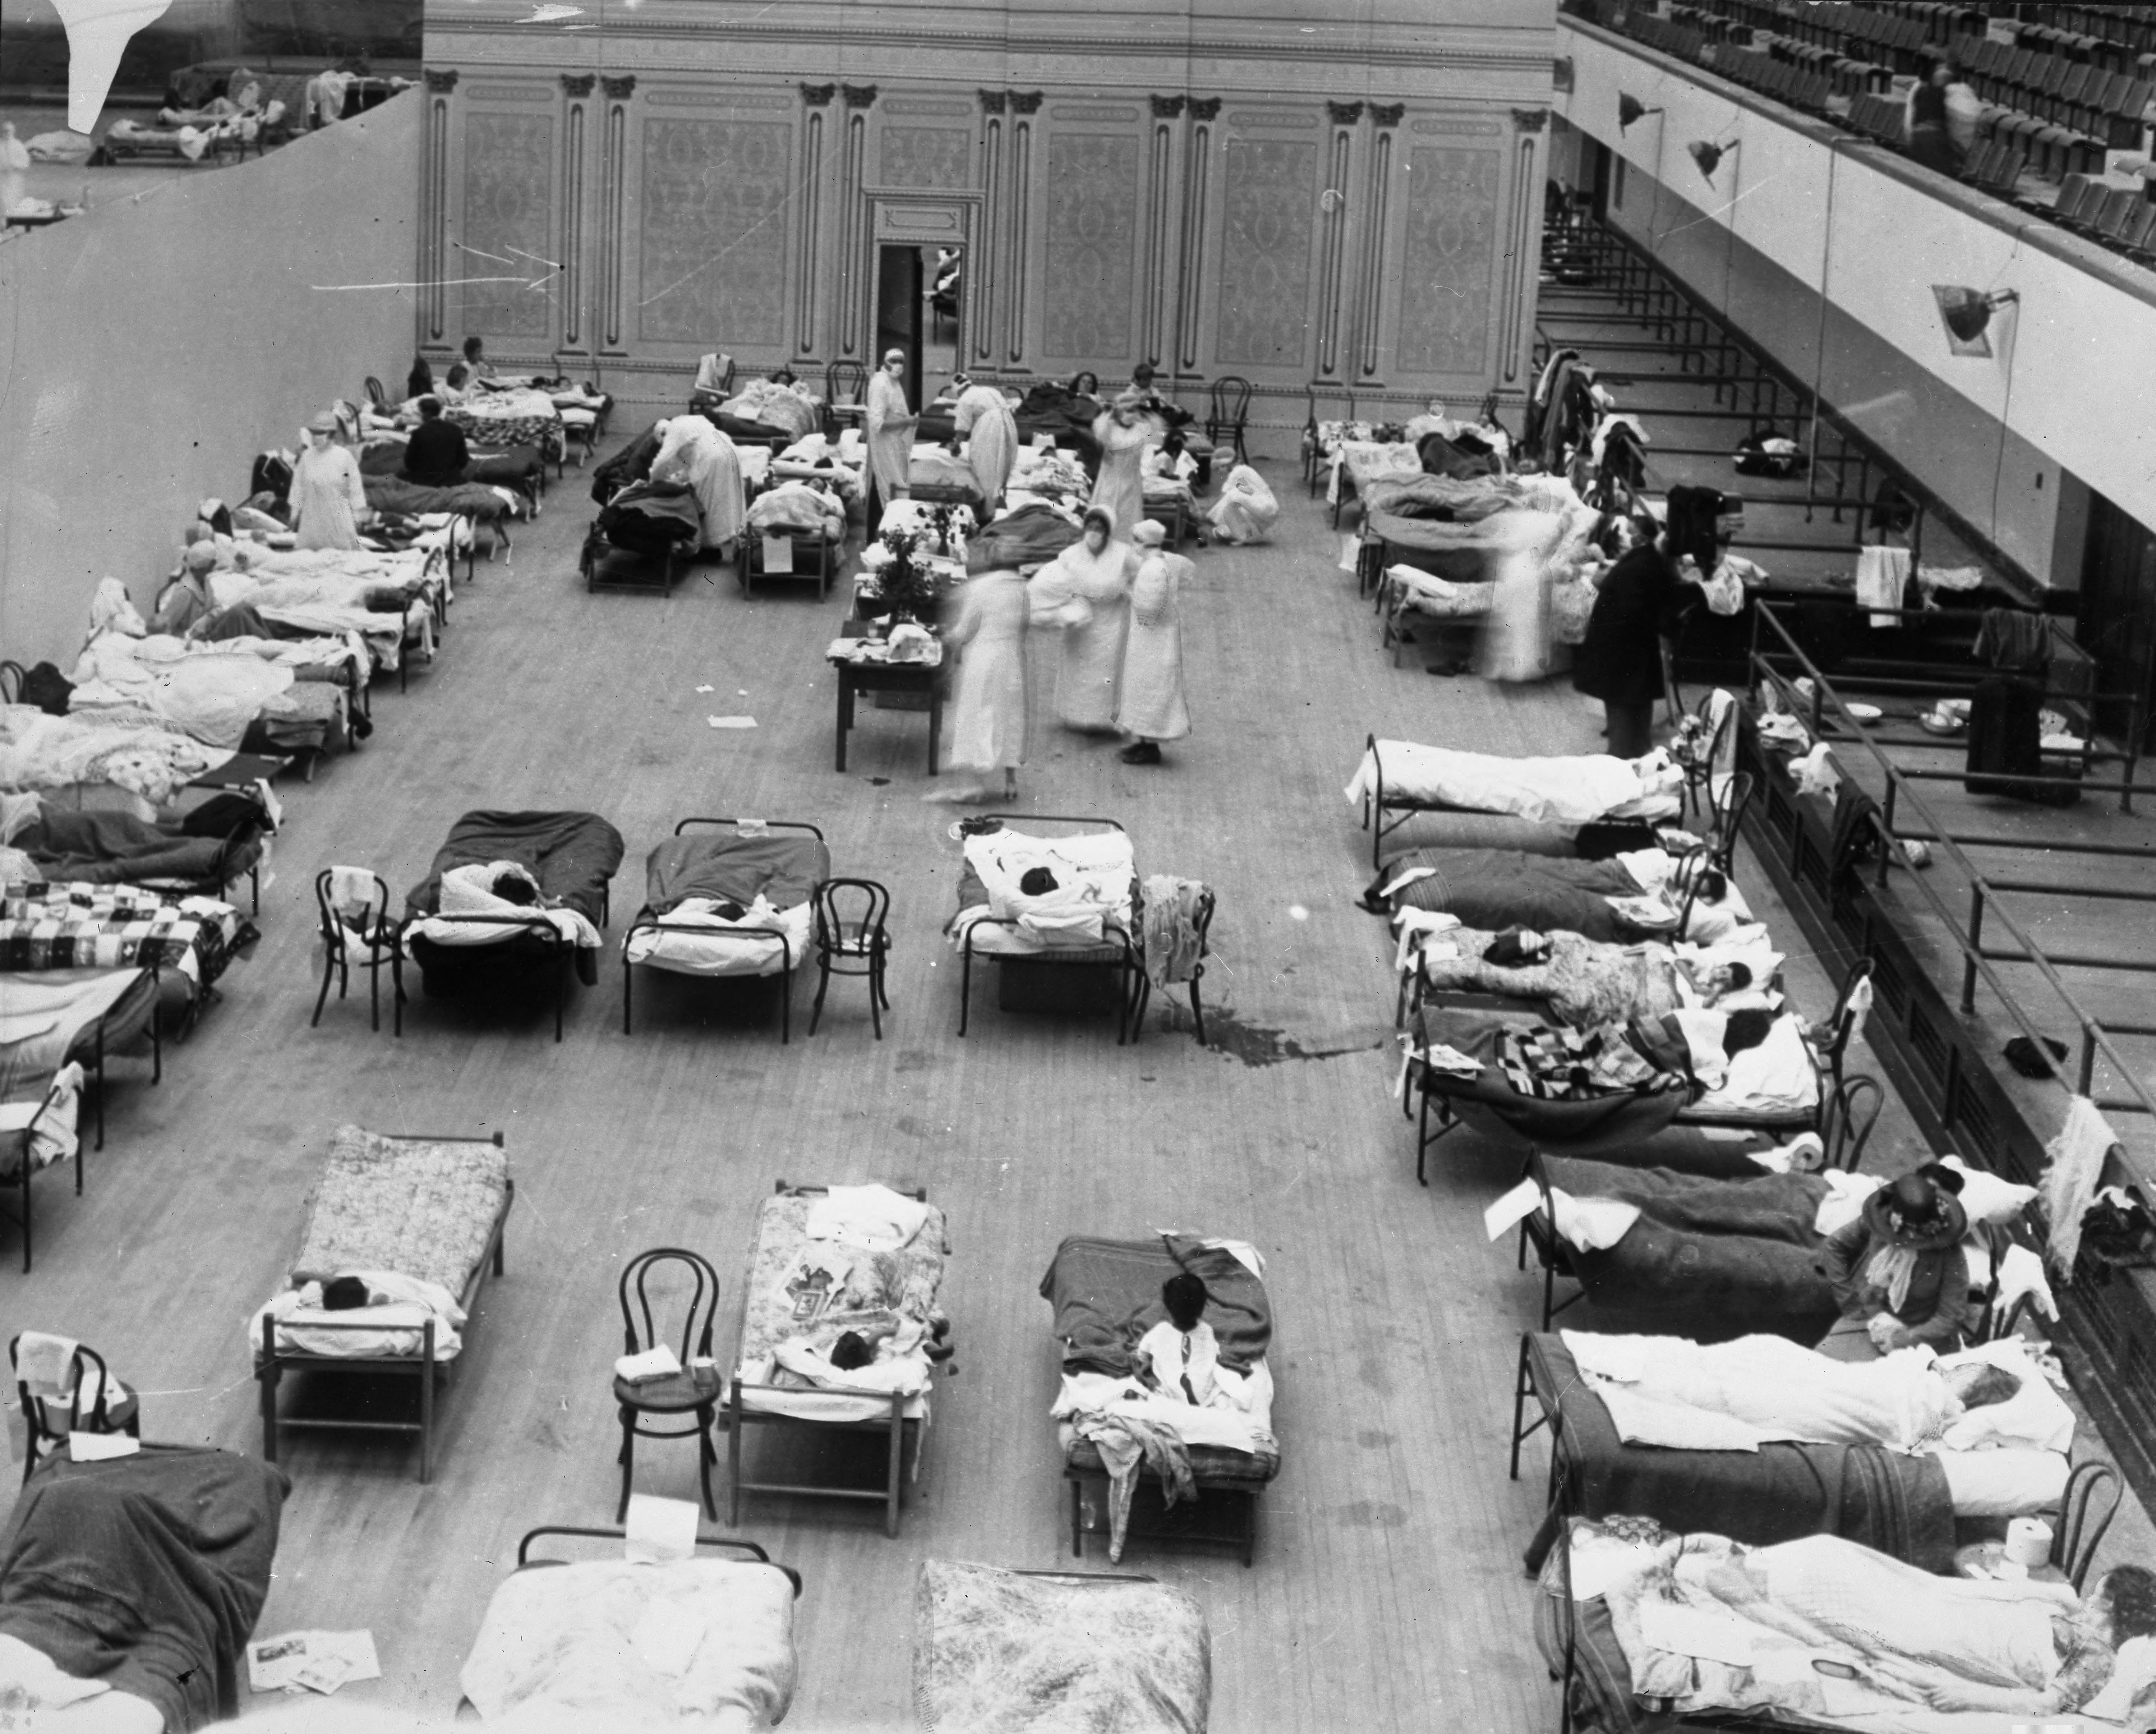 Enfermeras voluntarias de la Cruz Roja estadounidense atendiendo a los enfermos de gripe en la pandemia de 1918. El Auditorio Municipal de Oakland, California, habilitado como hospital provisional.